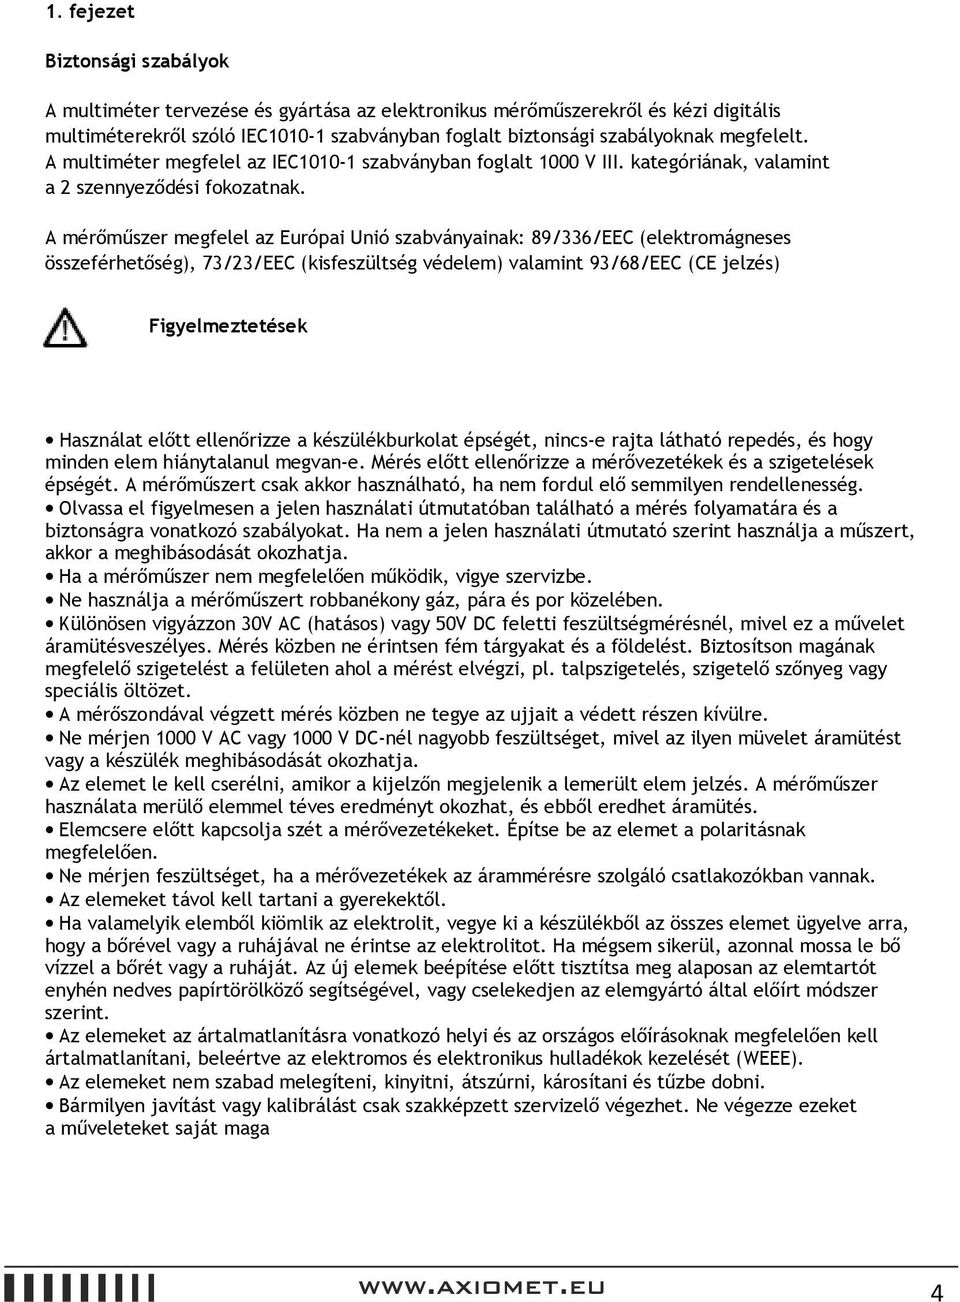 A mérőműszer megfelel az Európai Unió szabványainak: 89/336/EEC (elektromágneses összeférhetőség), 73/23/EEC (kisfeszültség védelem) valamint 93/68/EEC (CE jelzés) Figyelmeztetések Használat előtt